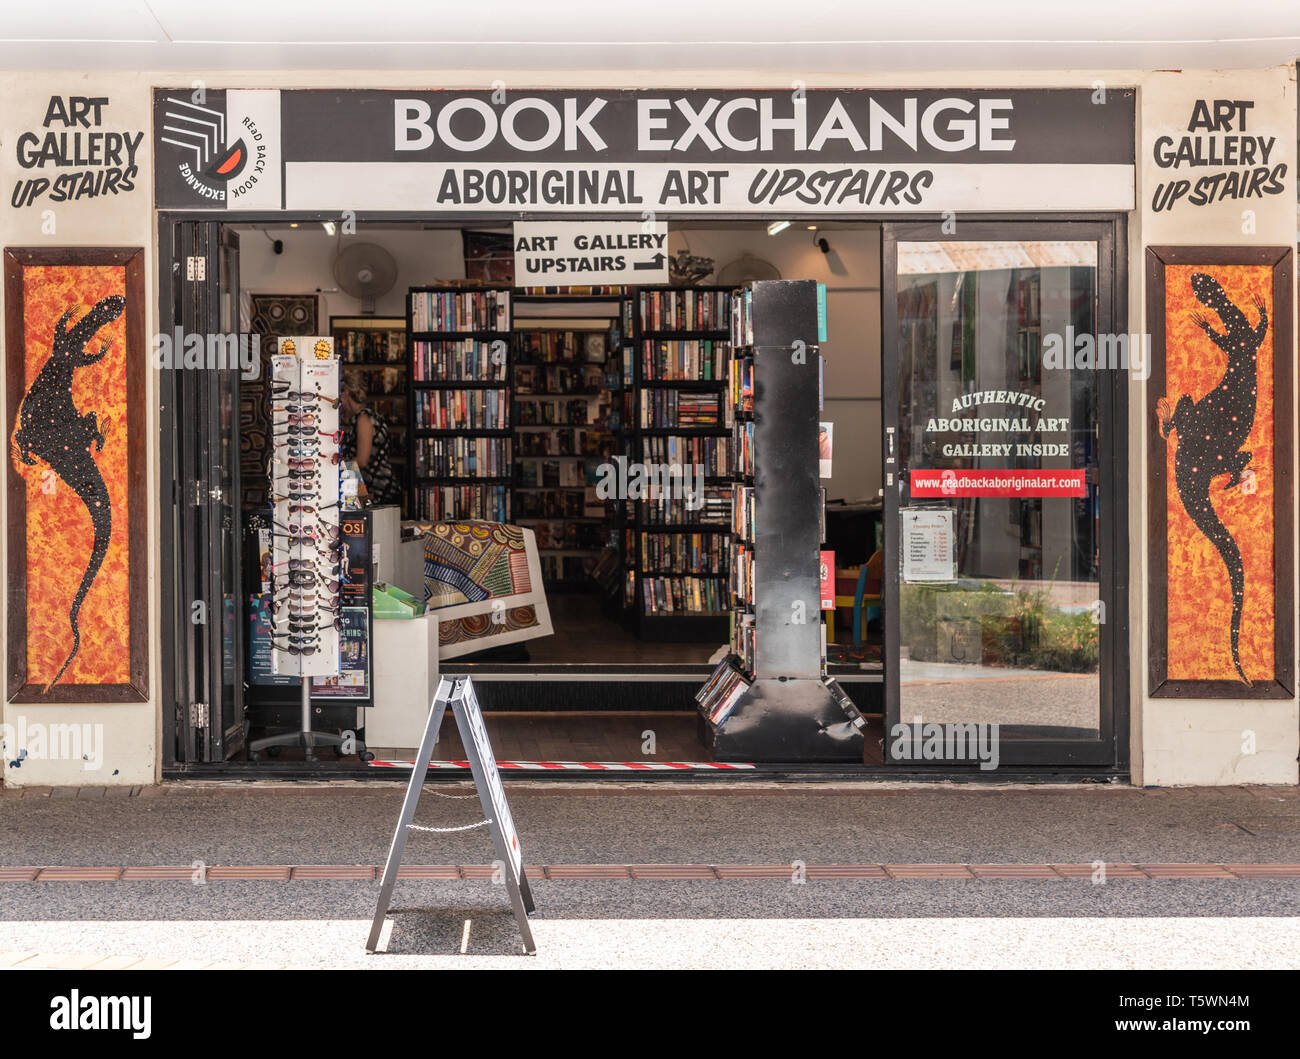 Darwin Australien - Februar 22, 2019: Das Buch Börse, Buch und Kunst Store auf der Mall Downtown. Fassade Eingang mit Büchern auf der Anzeige öffnen. Galerie Stockfoto